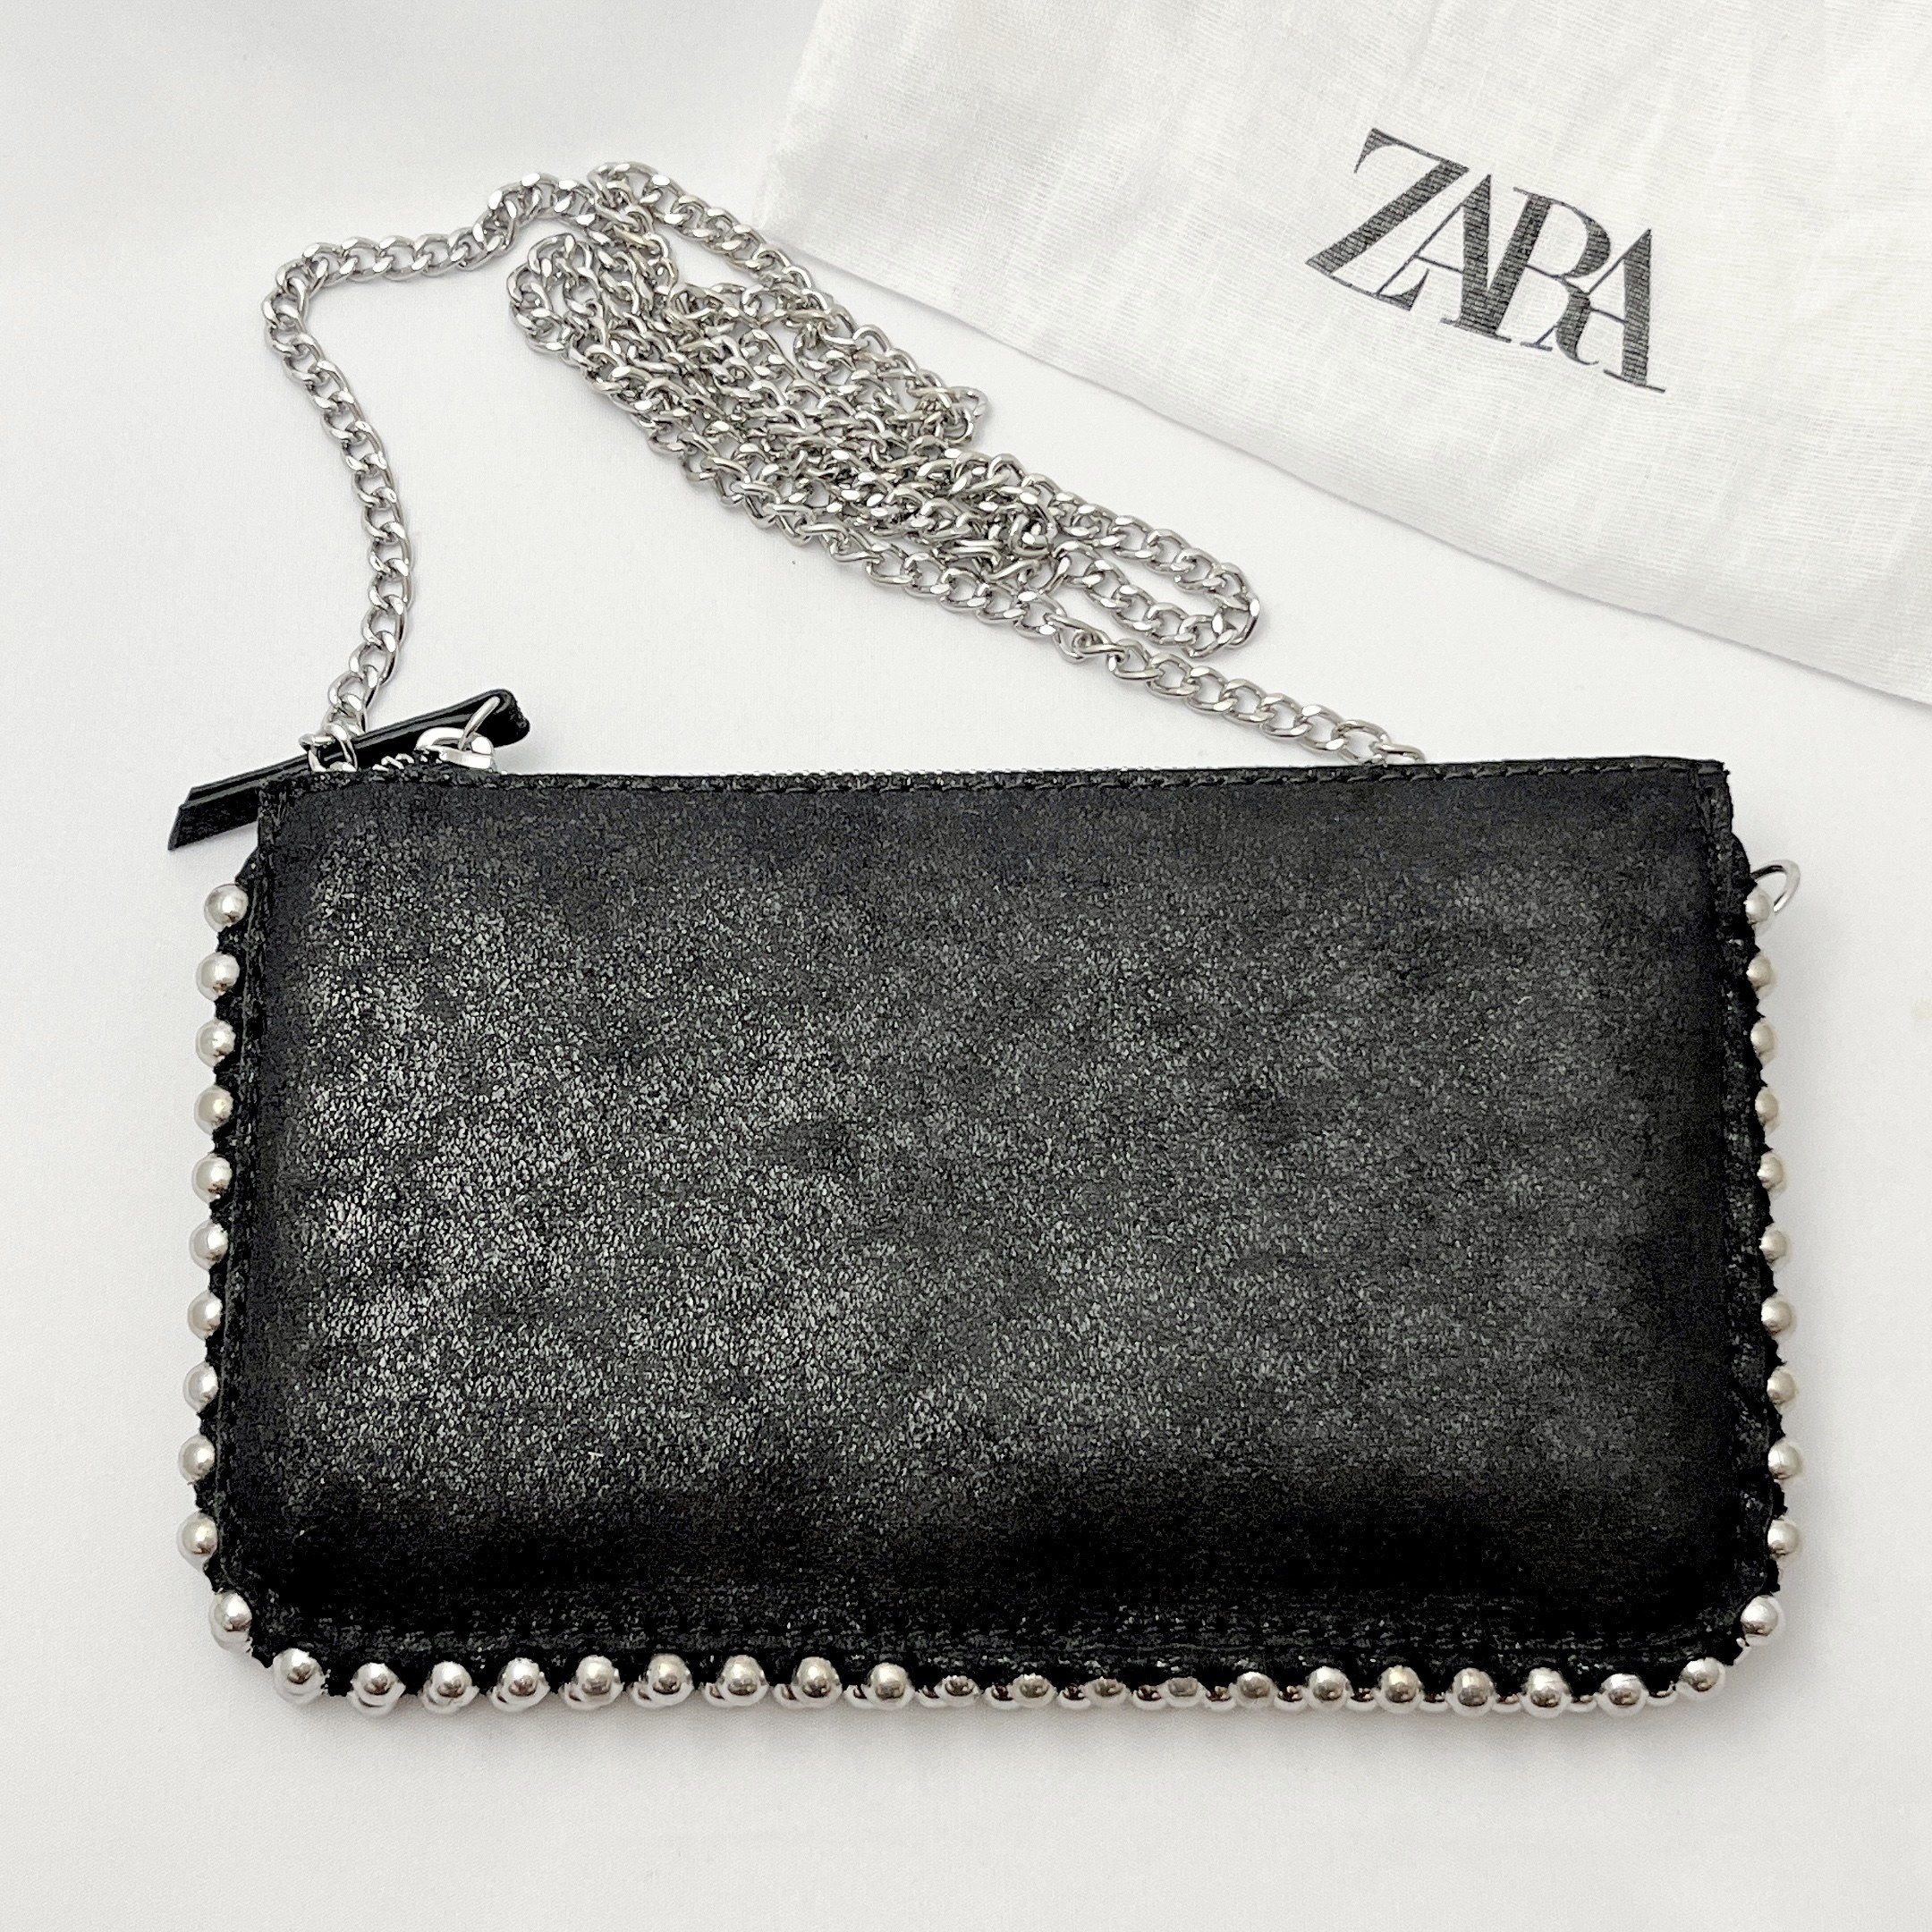 ZARA（ザラ）のおすすめレディースファッション小物「スタッズ付きブラッククロスボディバッグ」